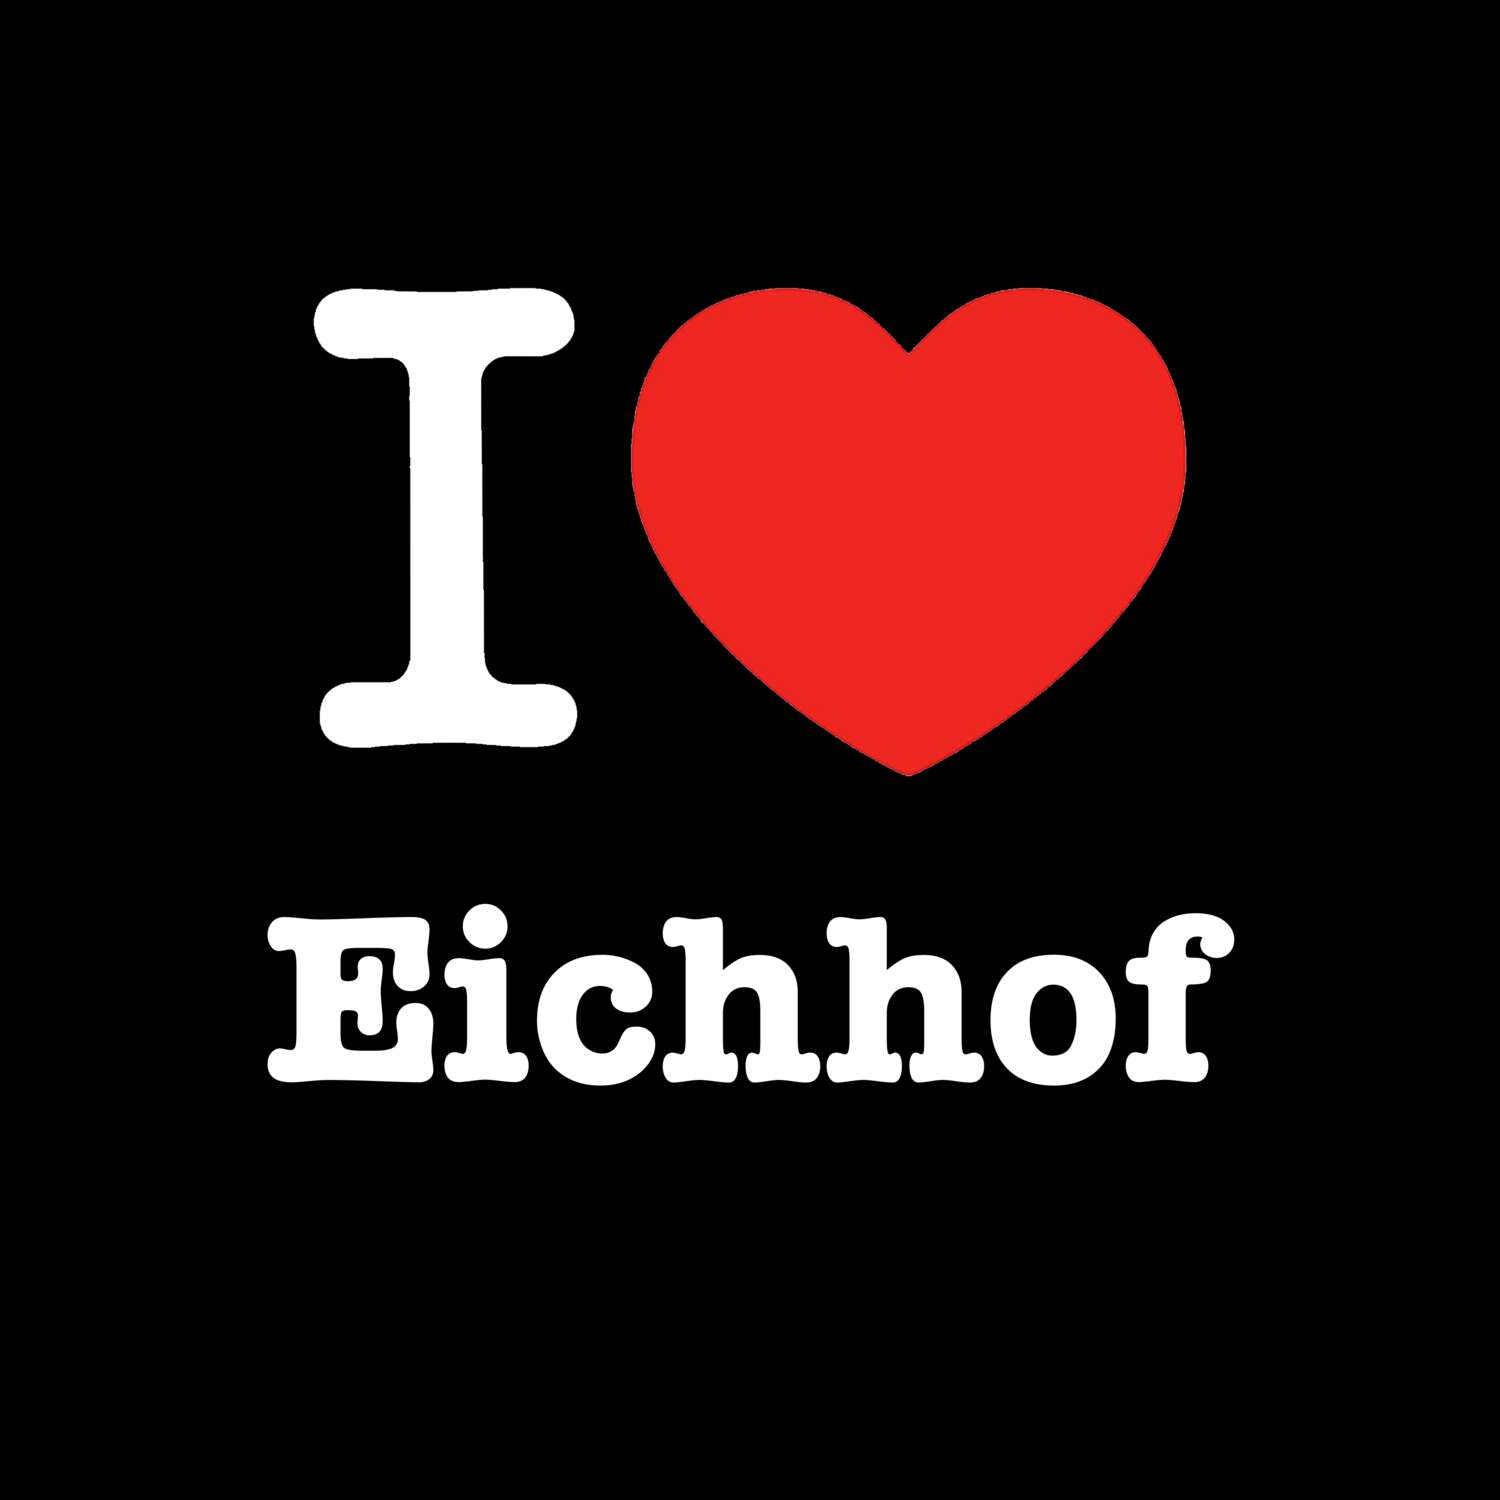 Eichhof T-Shirt »I love«